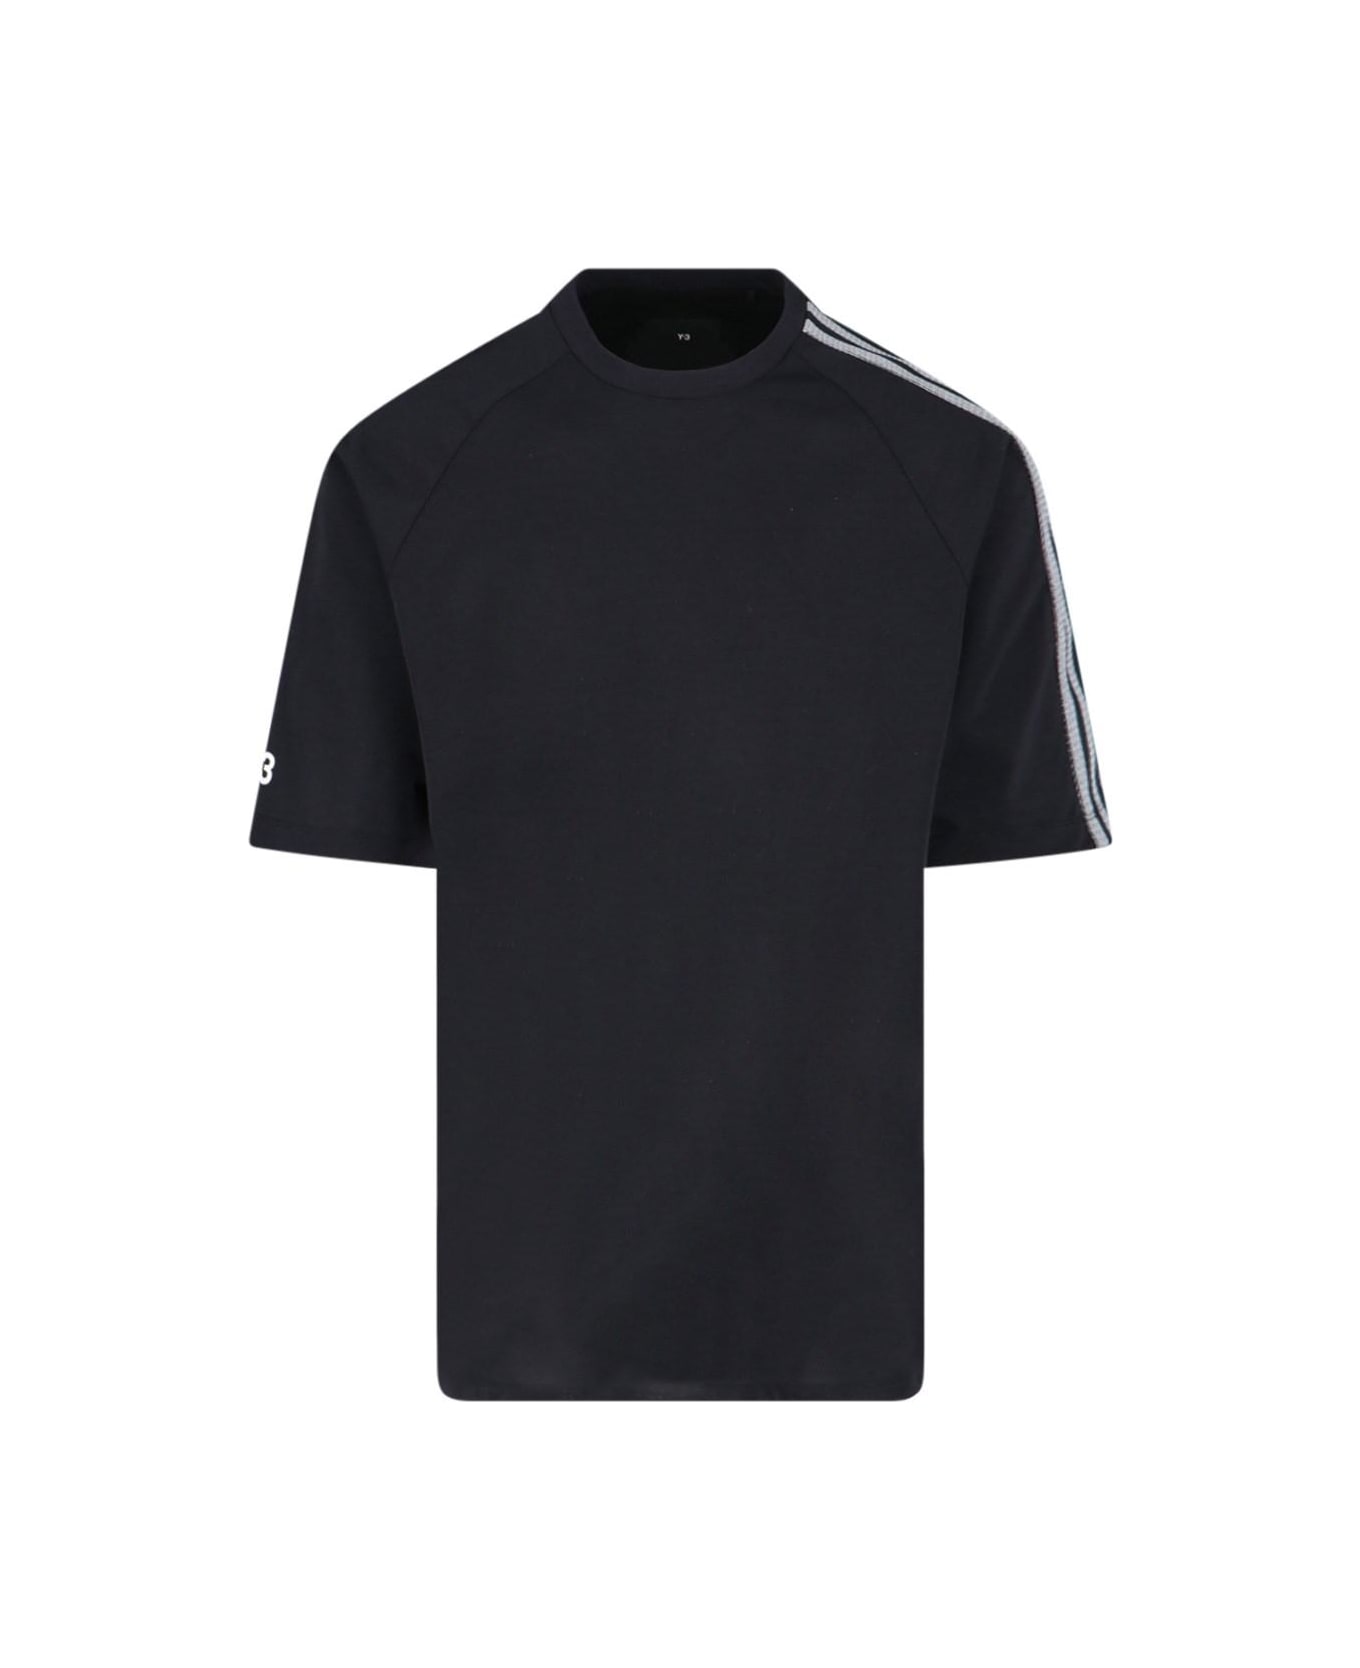 Y-3 '3 Stripes' T-shirt - Black シャツ